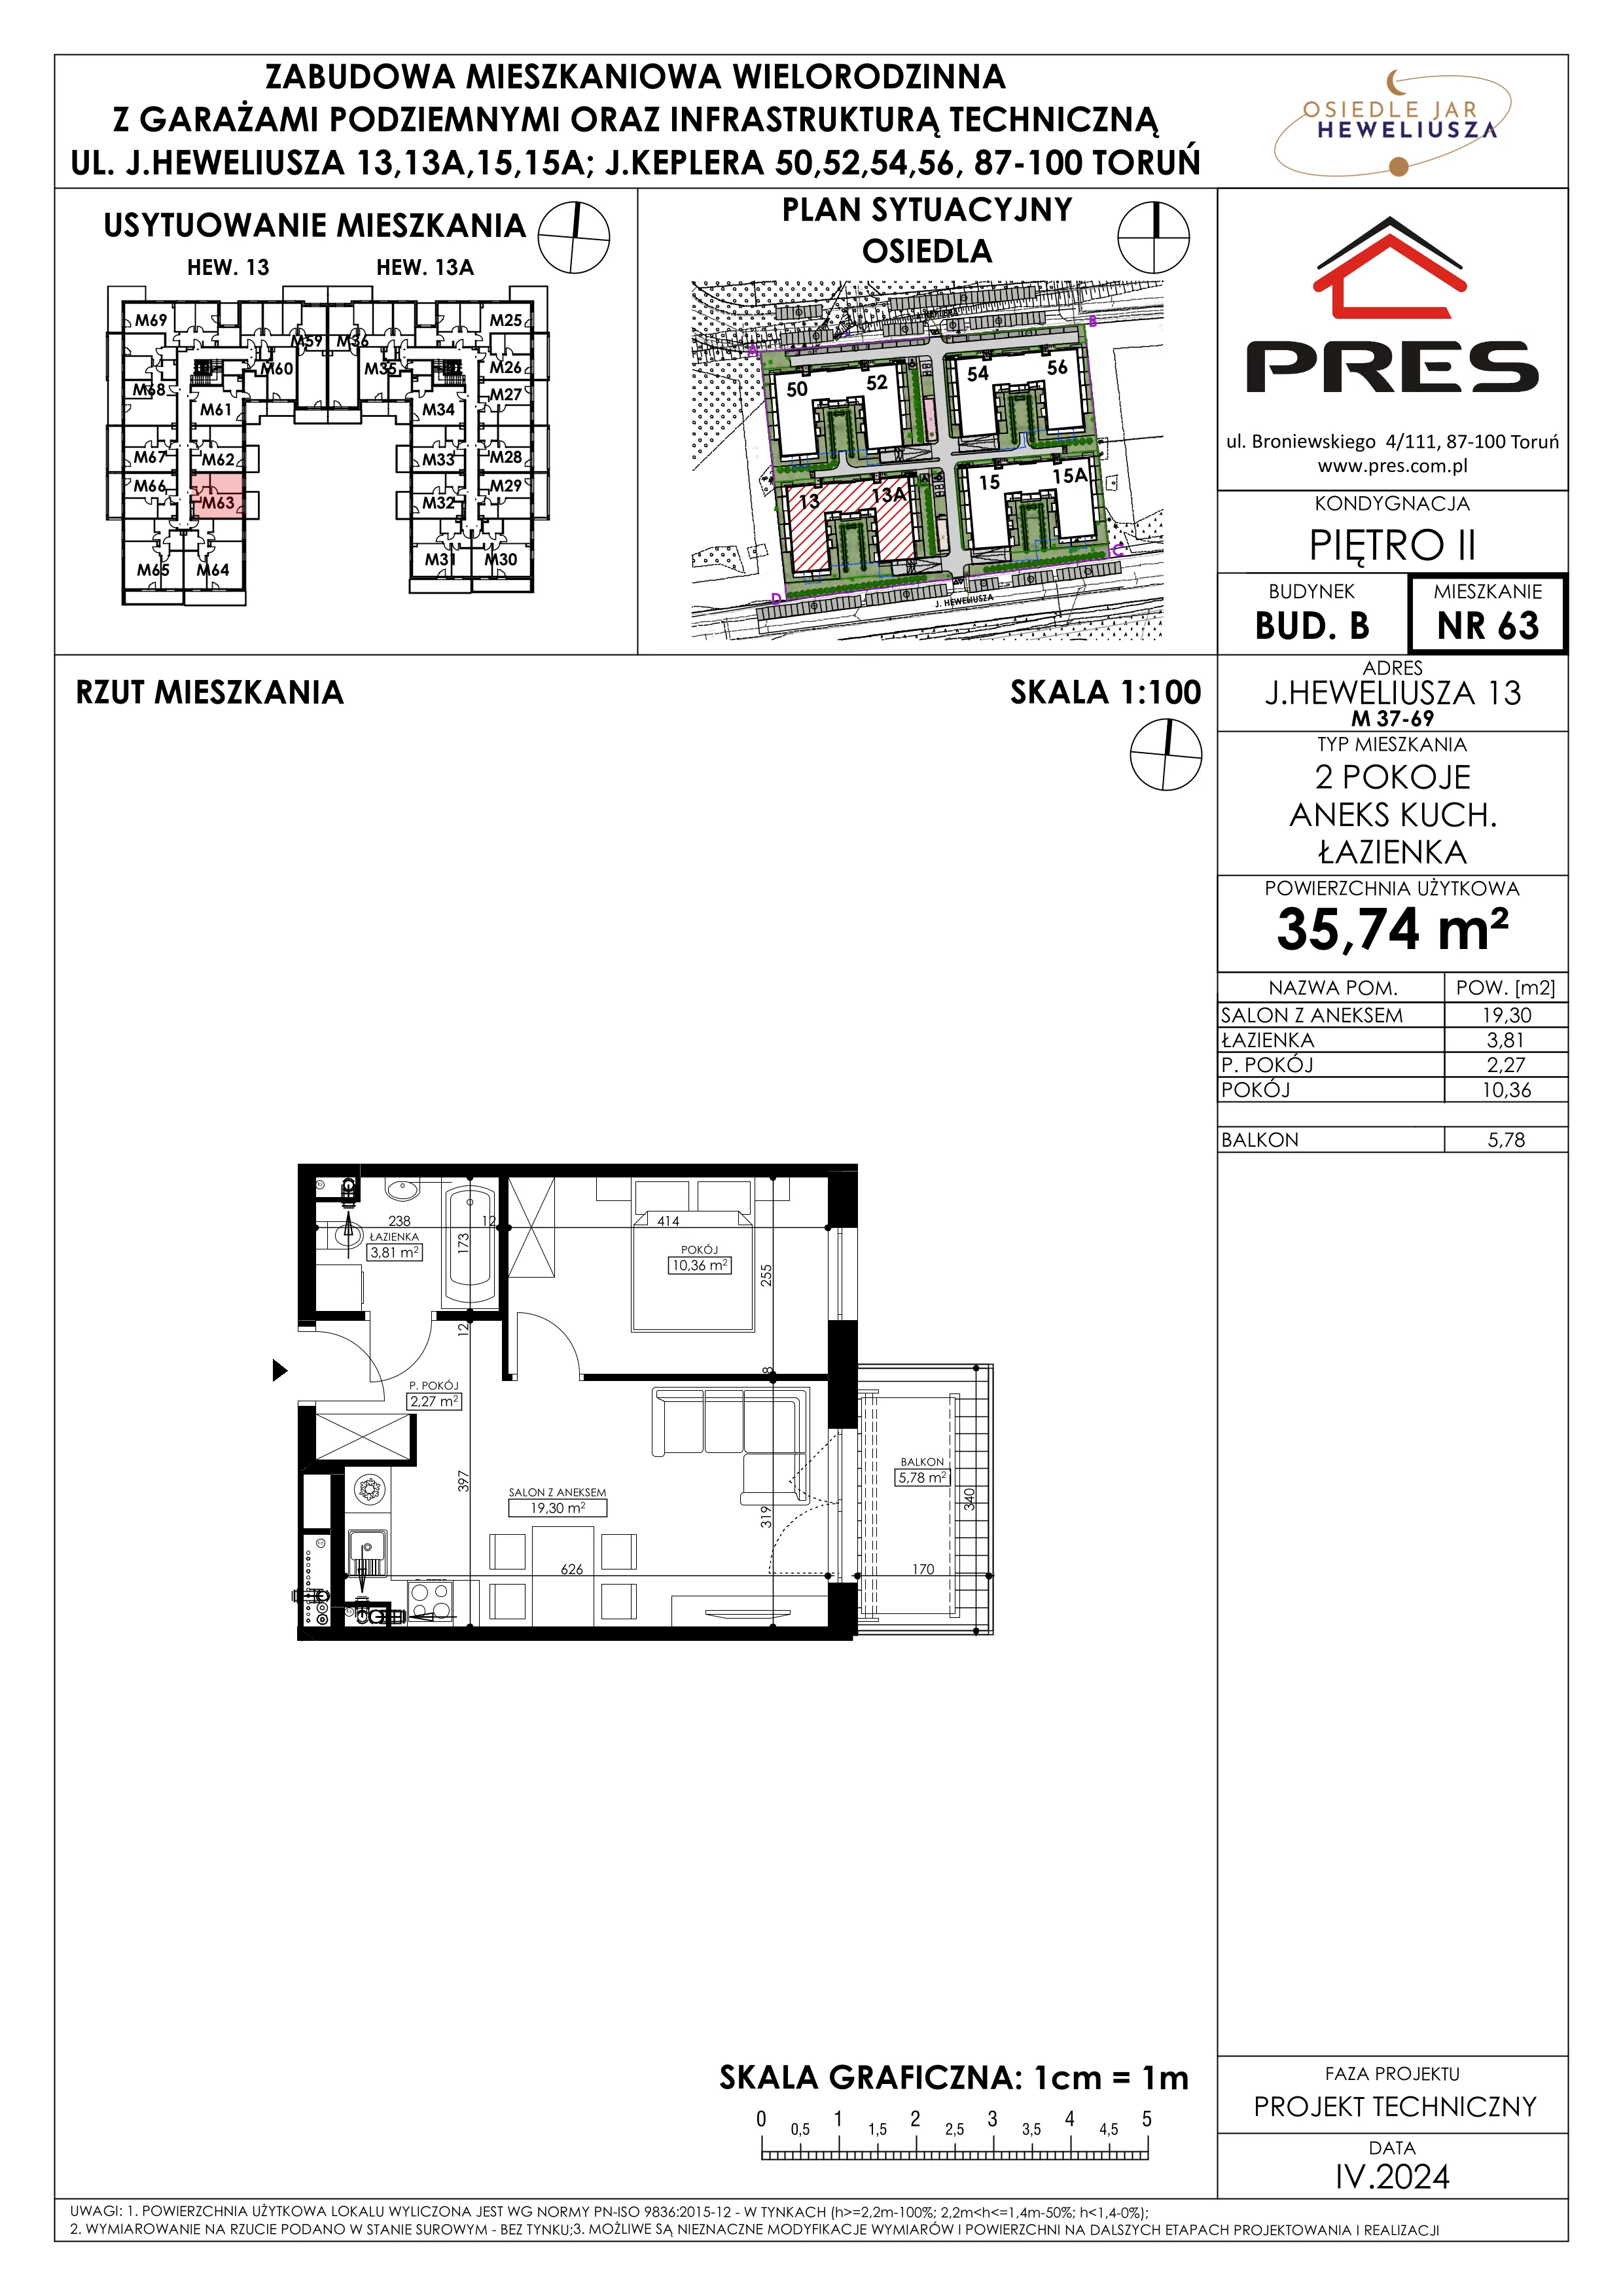 Mieszkanie 35,74 m², piętro 2, oferta nr 63, Osiedle JAR Heweliusza - Etap II, Toruń, Wrzosy, JAR, ul. Heweliusza 13-15A